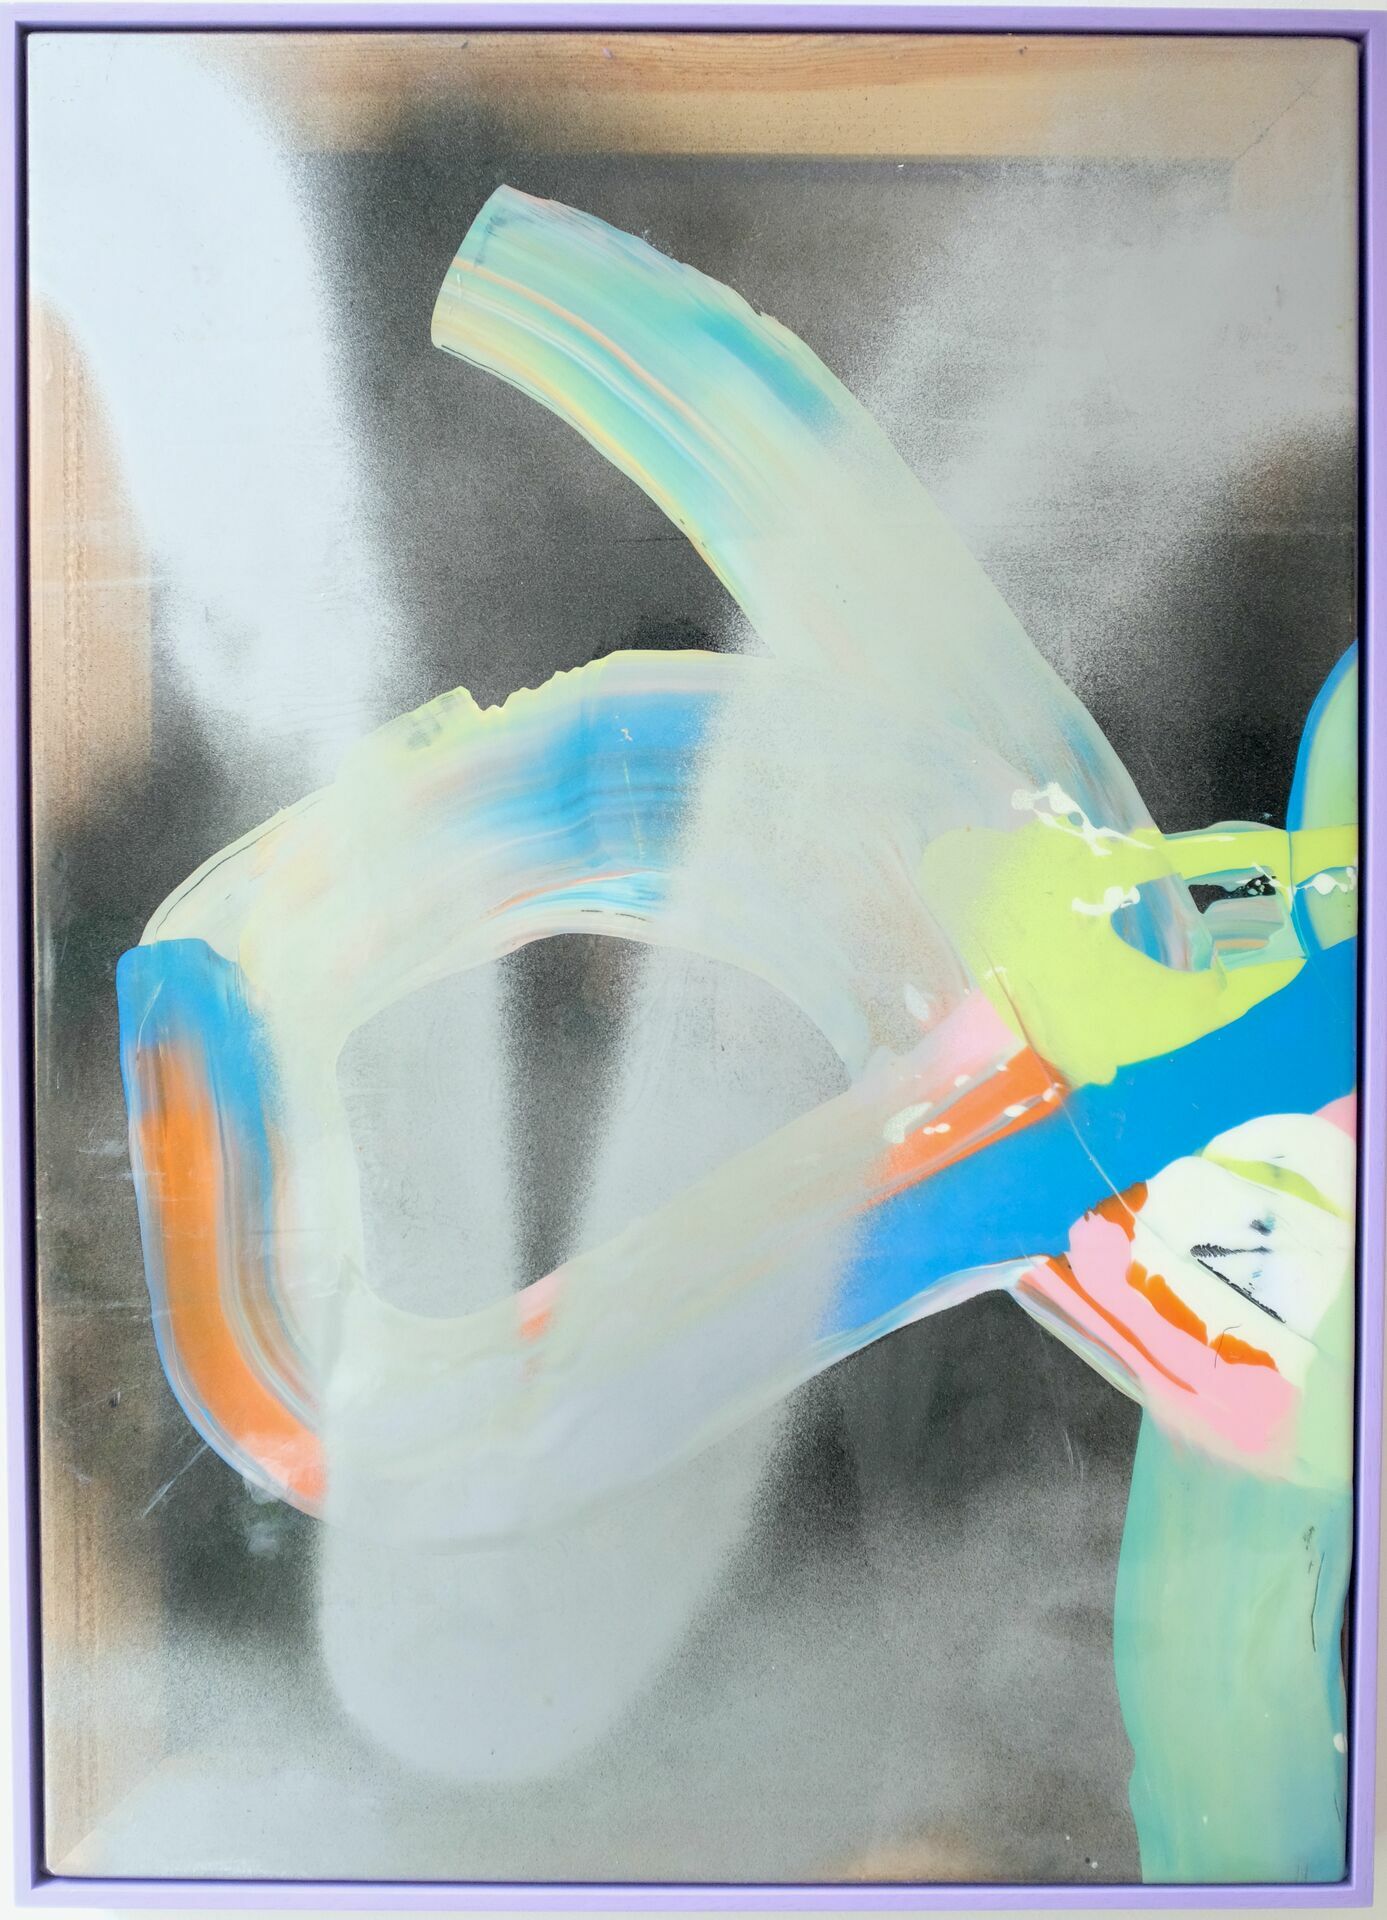 Ku'Damm Racing, 65 x 50 cm, lacquer on PVC, 2017-2021 (framed)